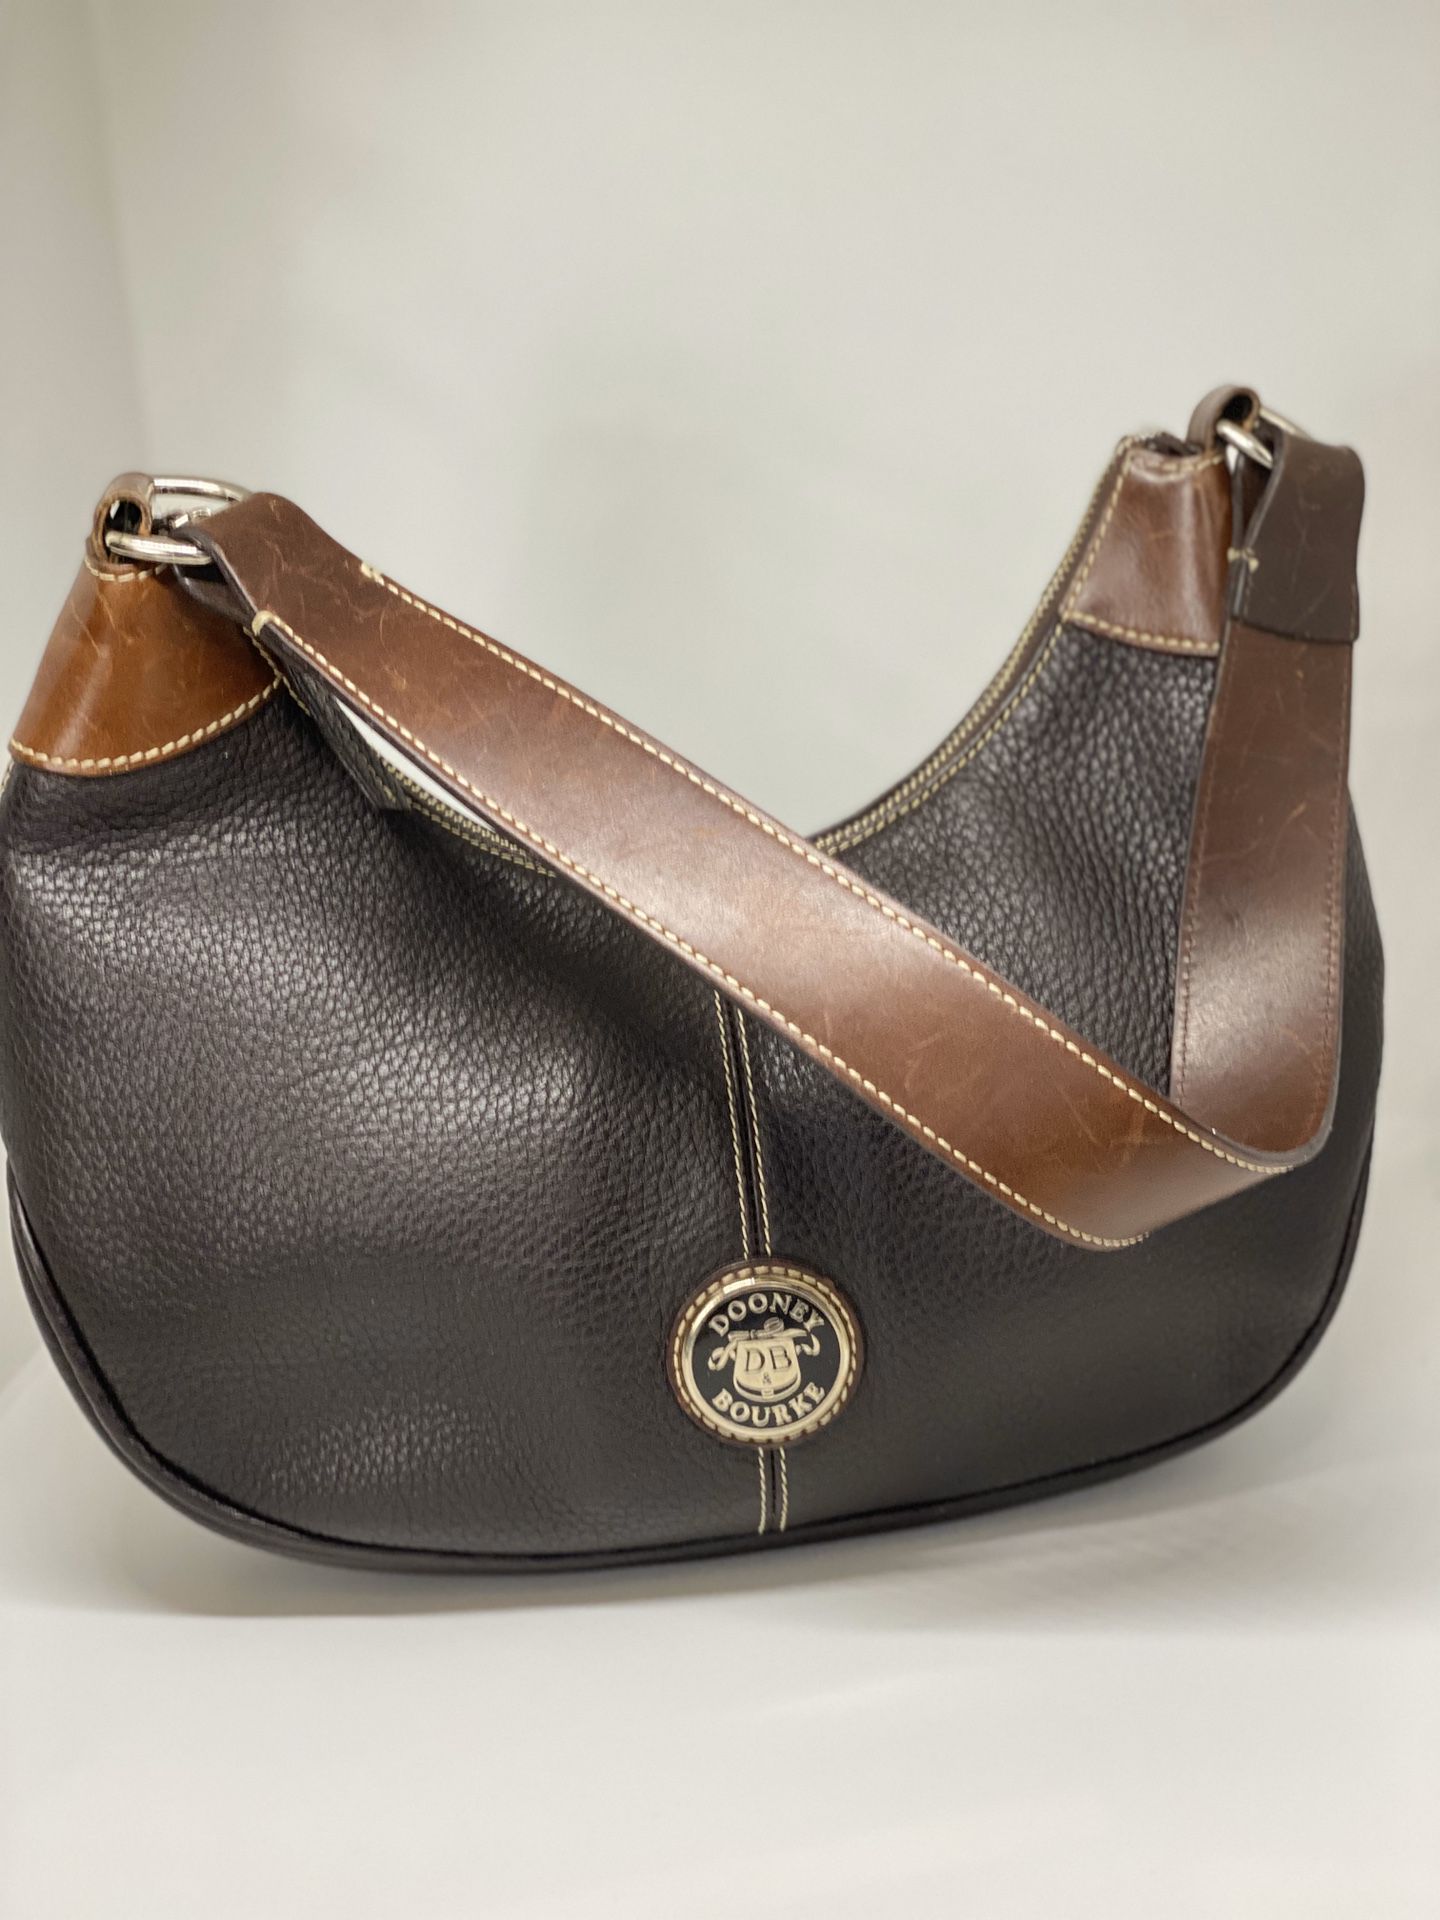 DOONEY & BOURKE 💥VINTAGE💥 Leather Hobo Bag